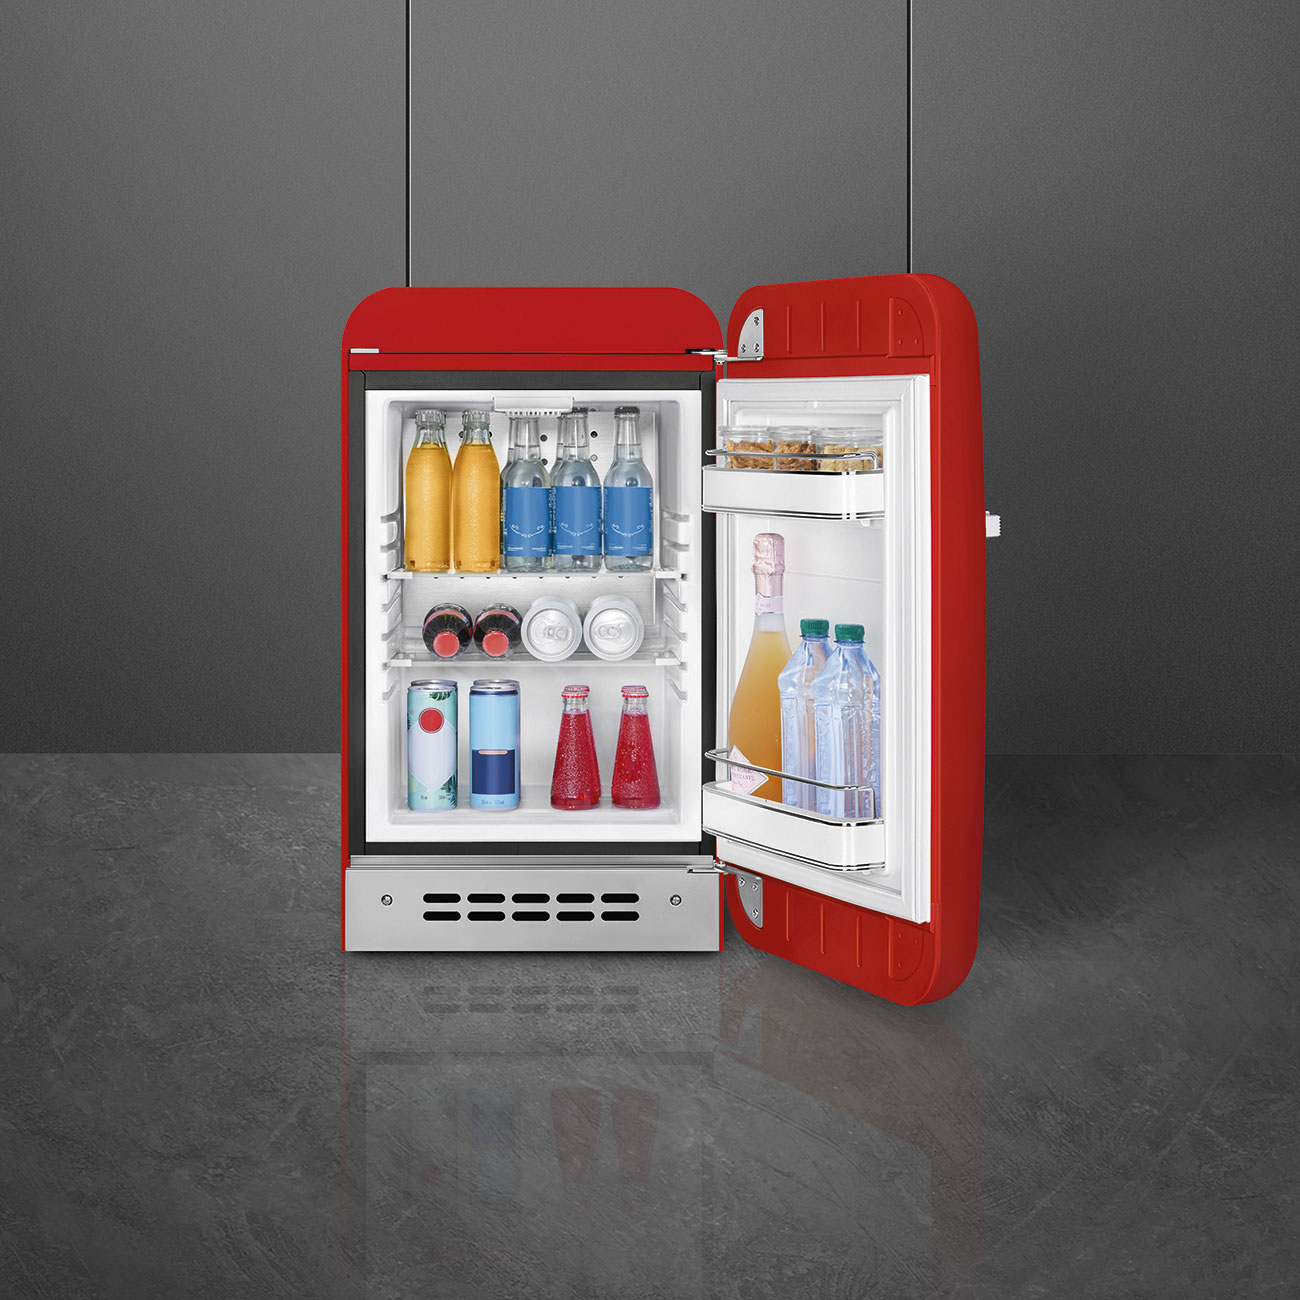 Red refrigerator - Smeg_3